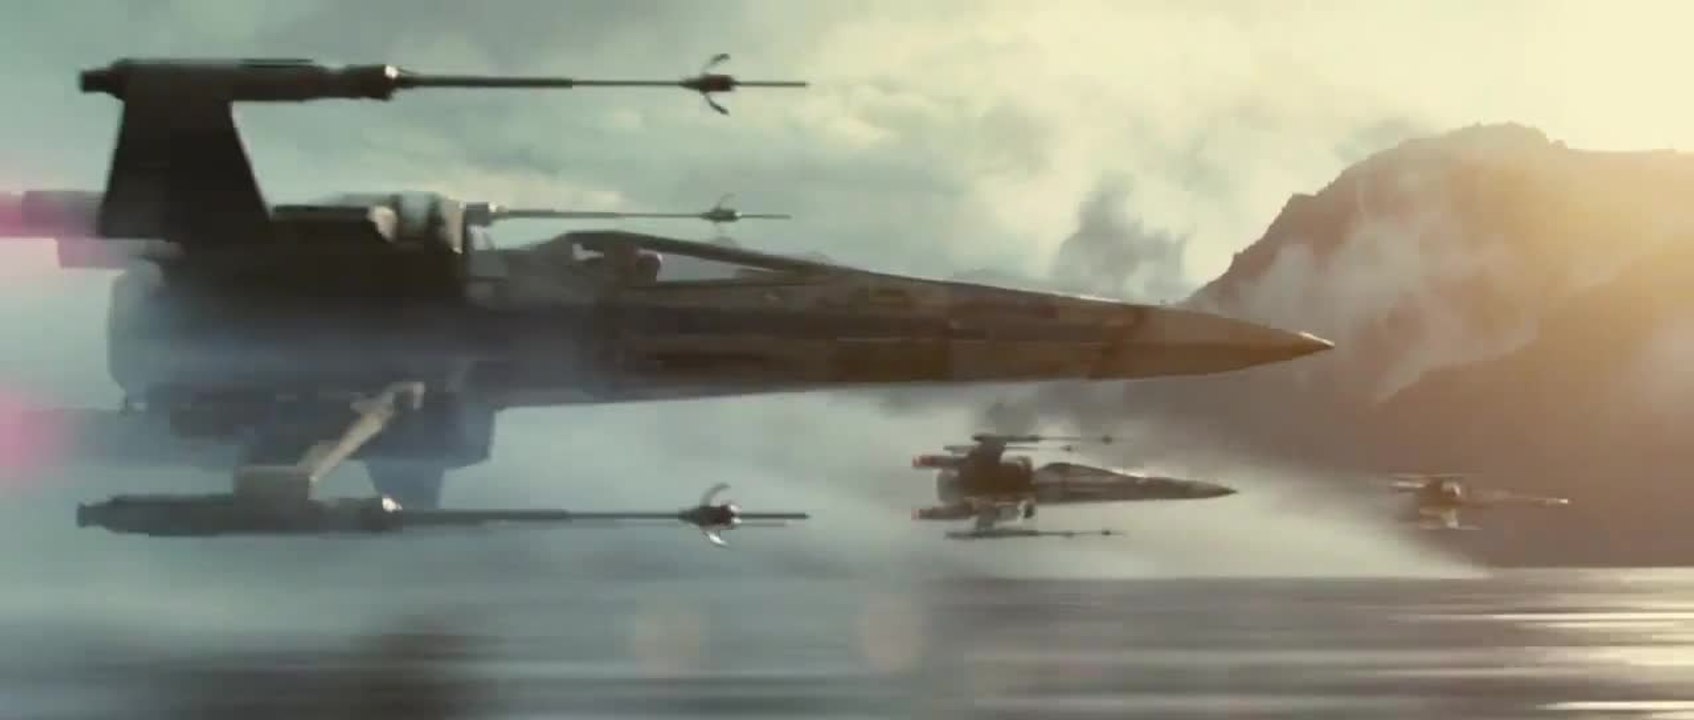 Star Wars Episode 7 Das Erwachen der Macht - Trailer #1 (2015) [Deutsch] Offiziell J.J. Abrams Film